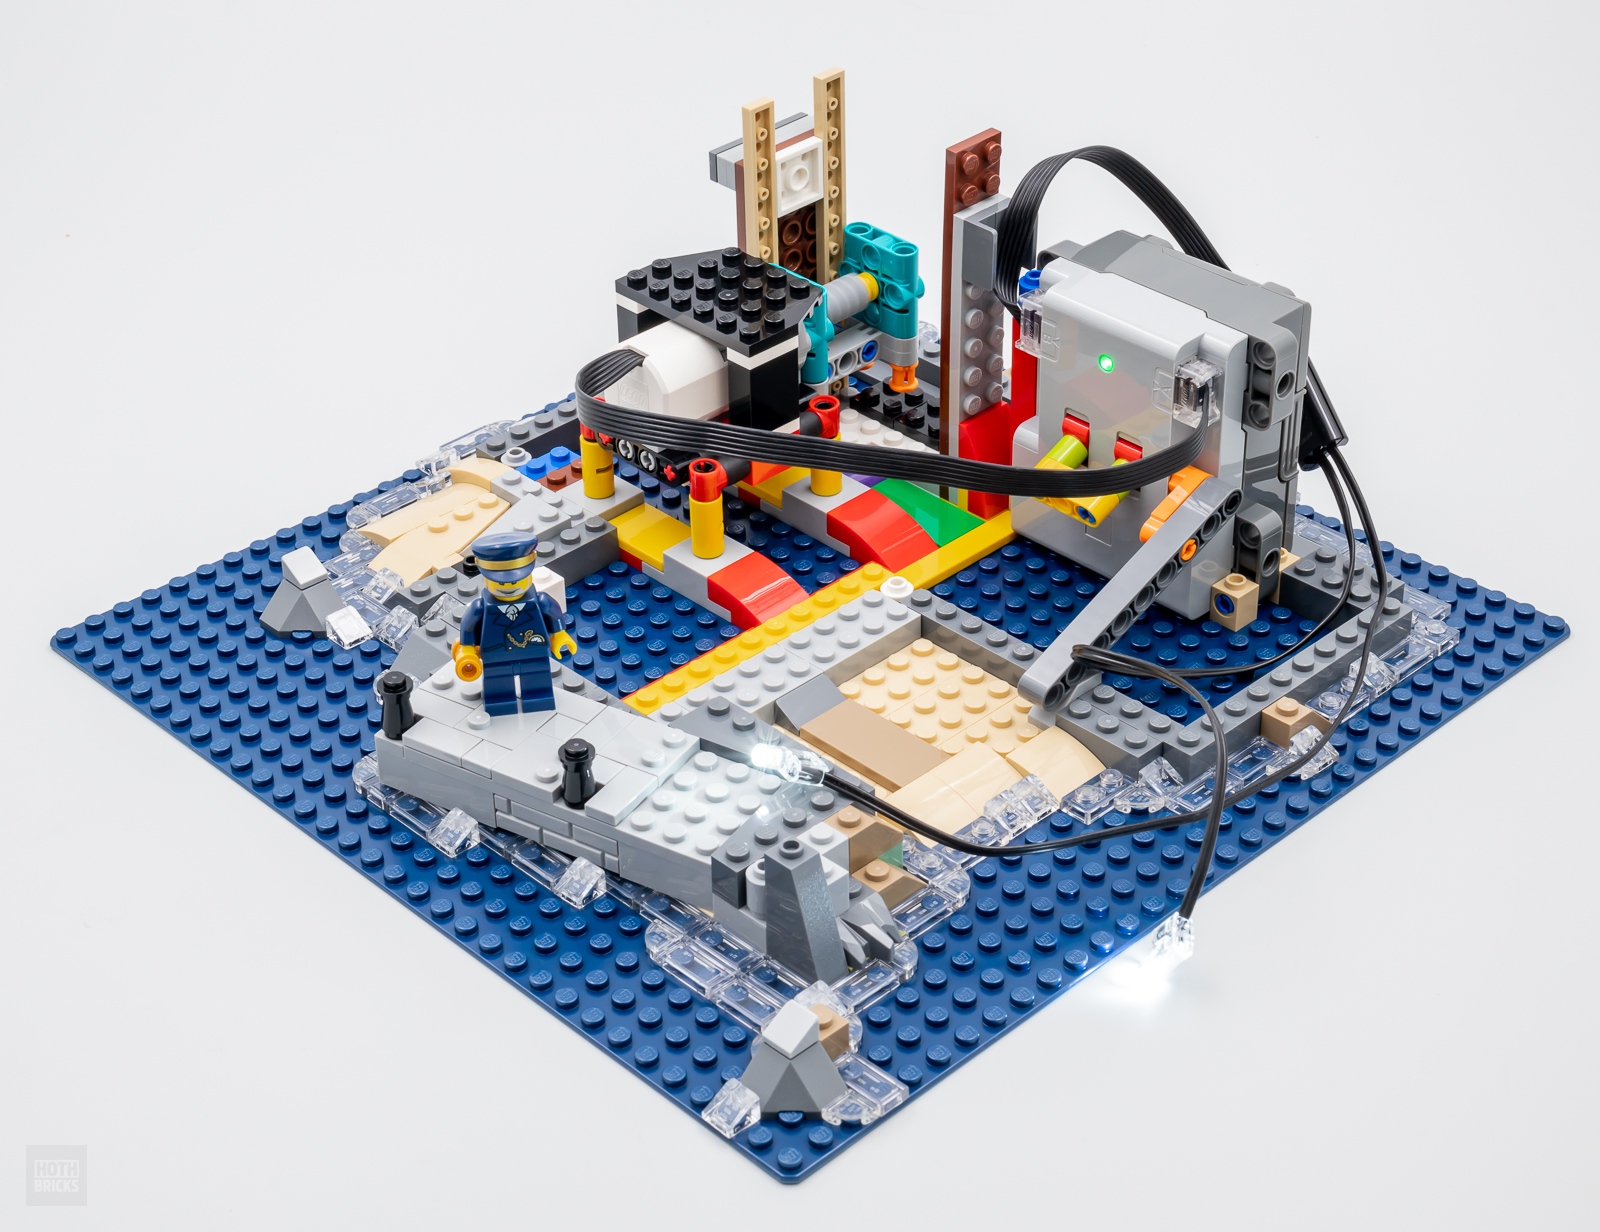 Chez LEGO : le nouveau phare LEGO Ideas 21335 Motorized Lighthouse est  disponible ! - HelloBricks